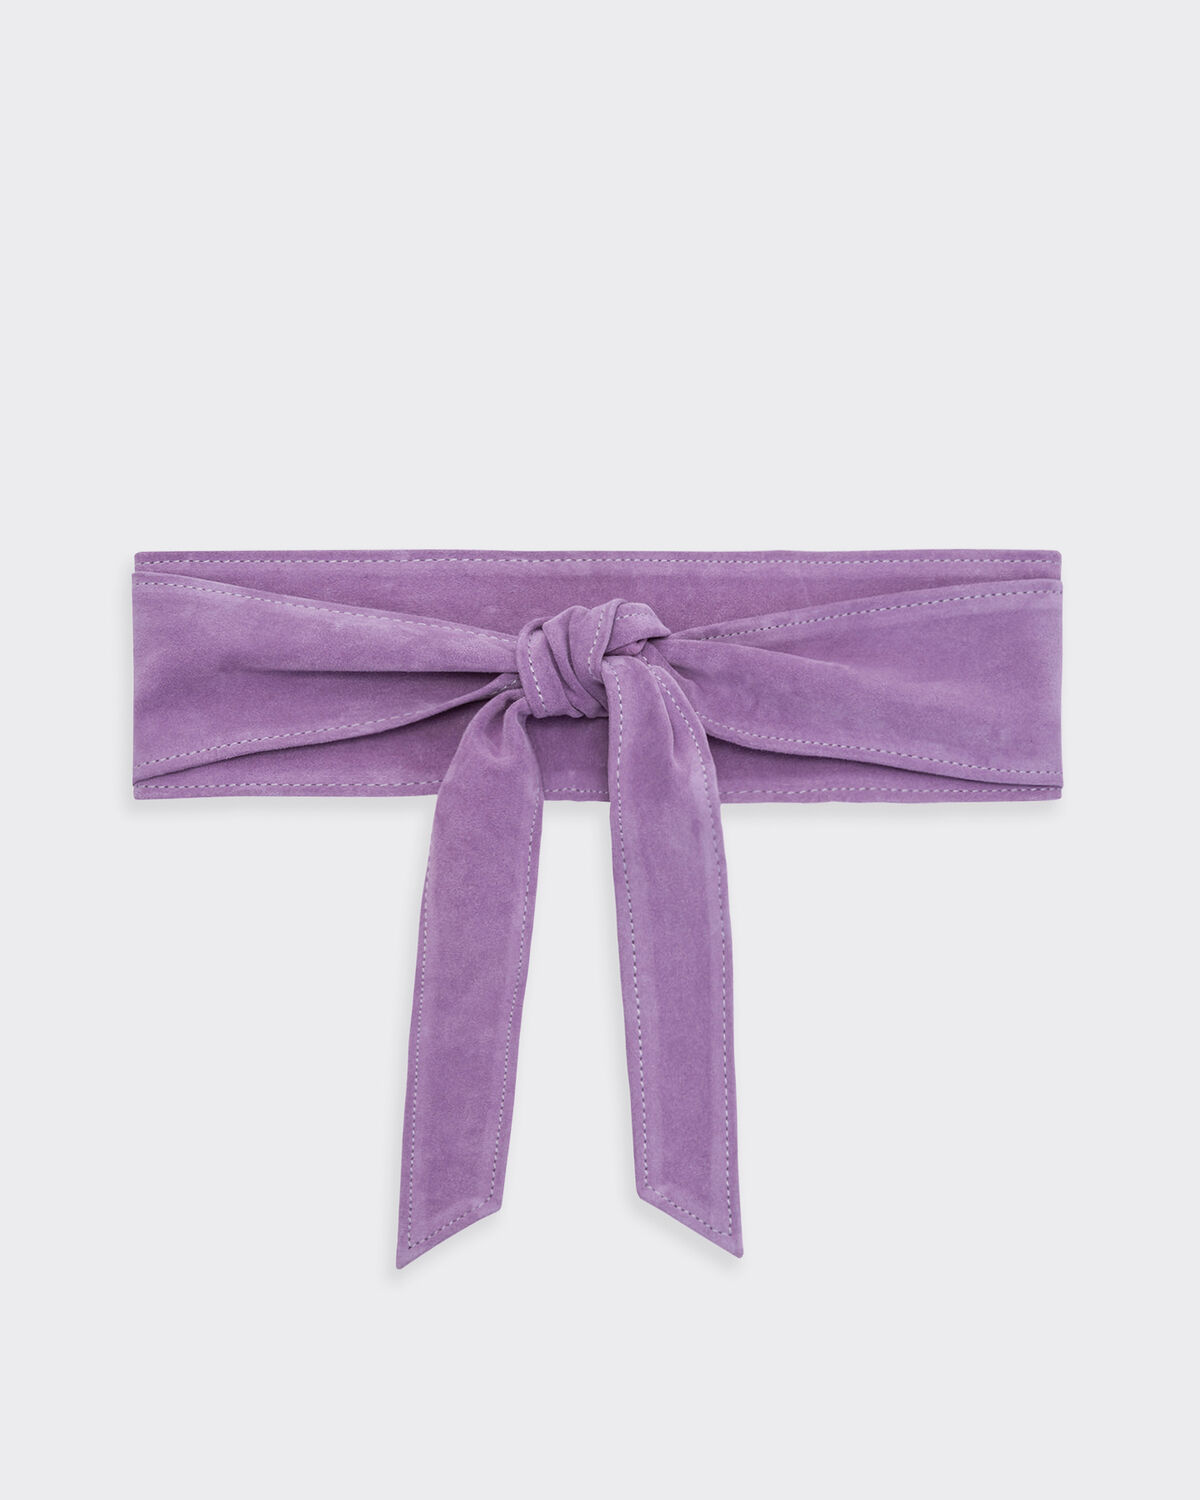 Simply2 Belt Purple by IRO Paris